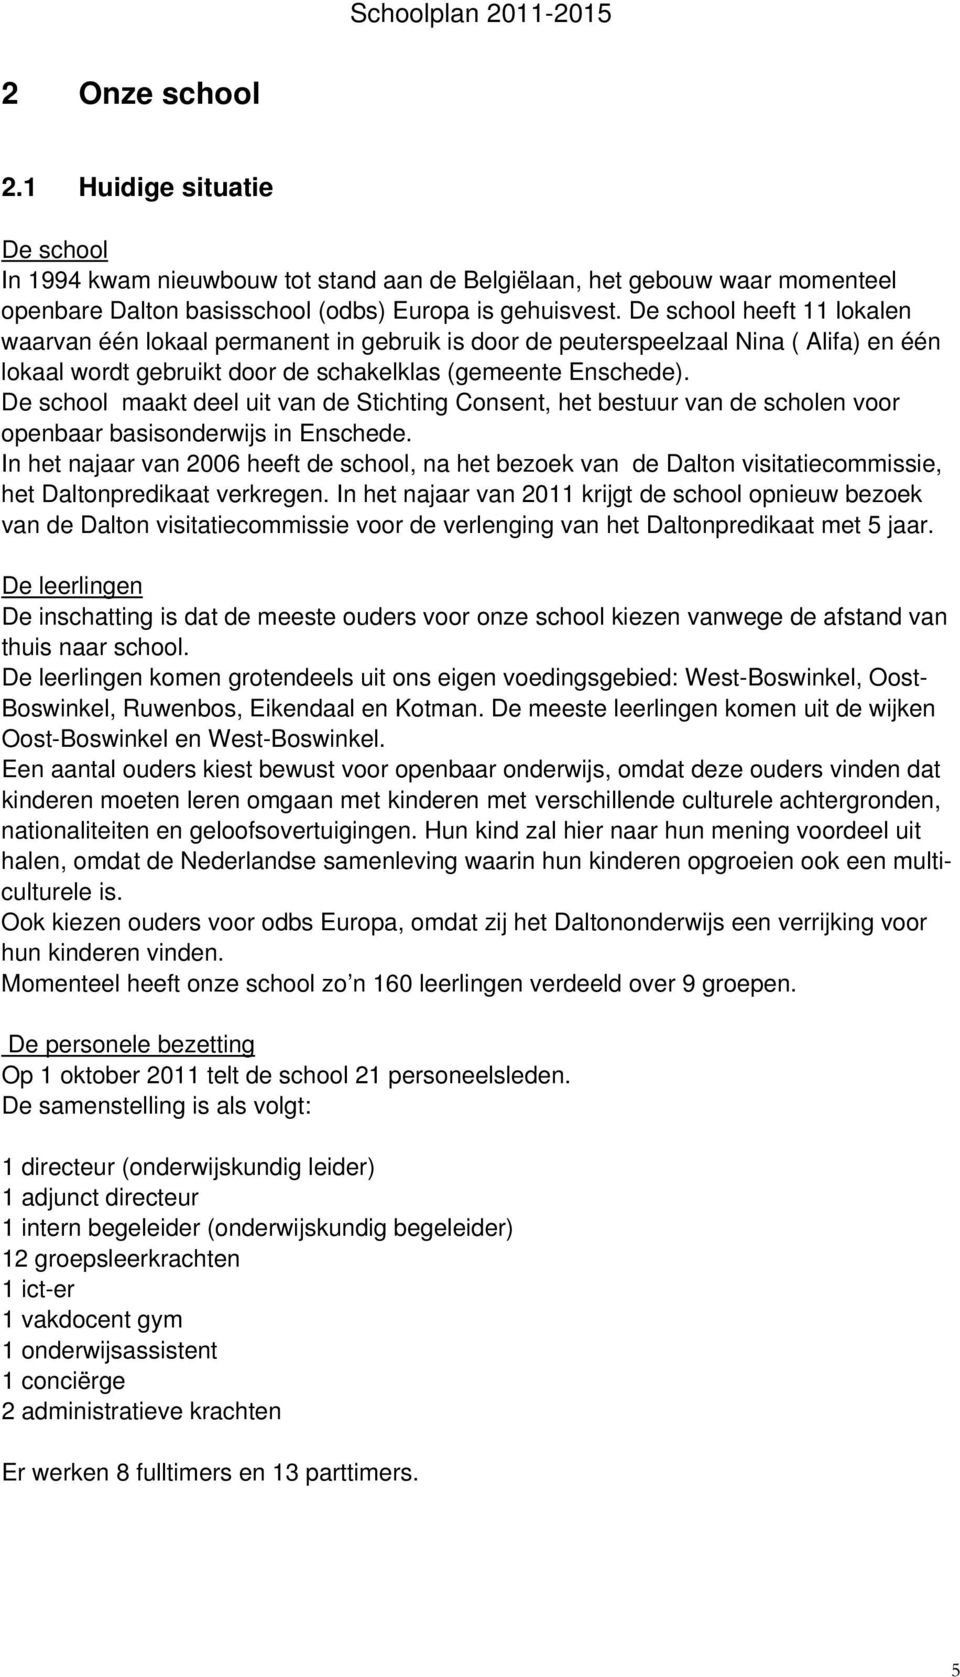 De school maakt deel uit van de Stichting Consent, het bestuur van de scholen voor openbaar basisonderwijs in Enschede.